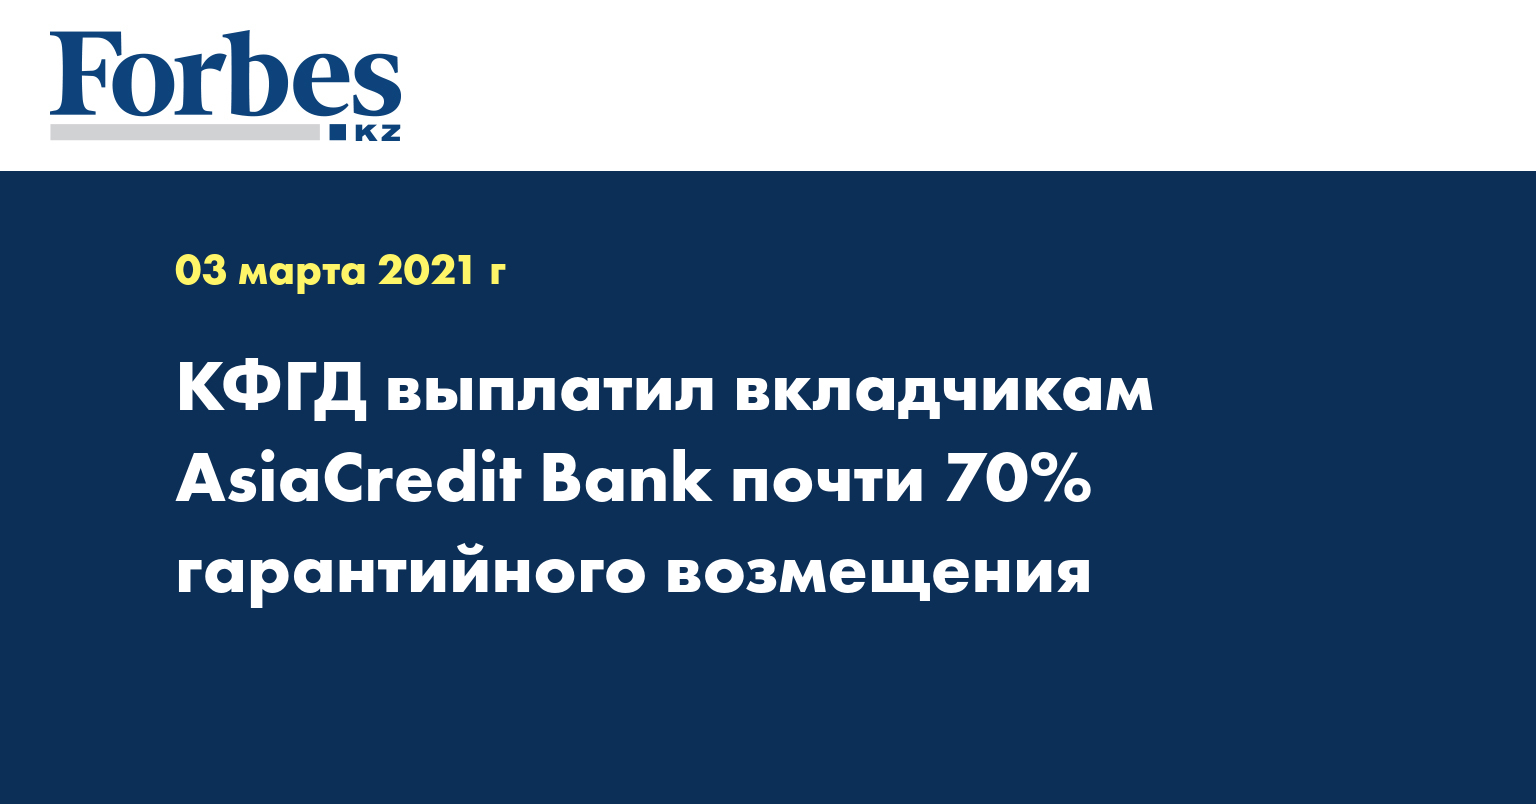 КФГД выплатил вкладчикам AsiaCredit Bank почти 70% гарантийного возмещения